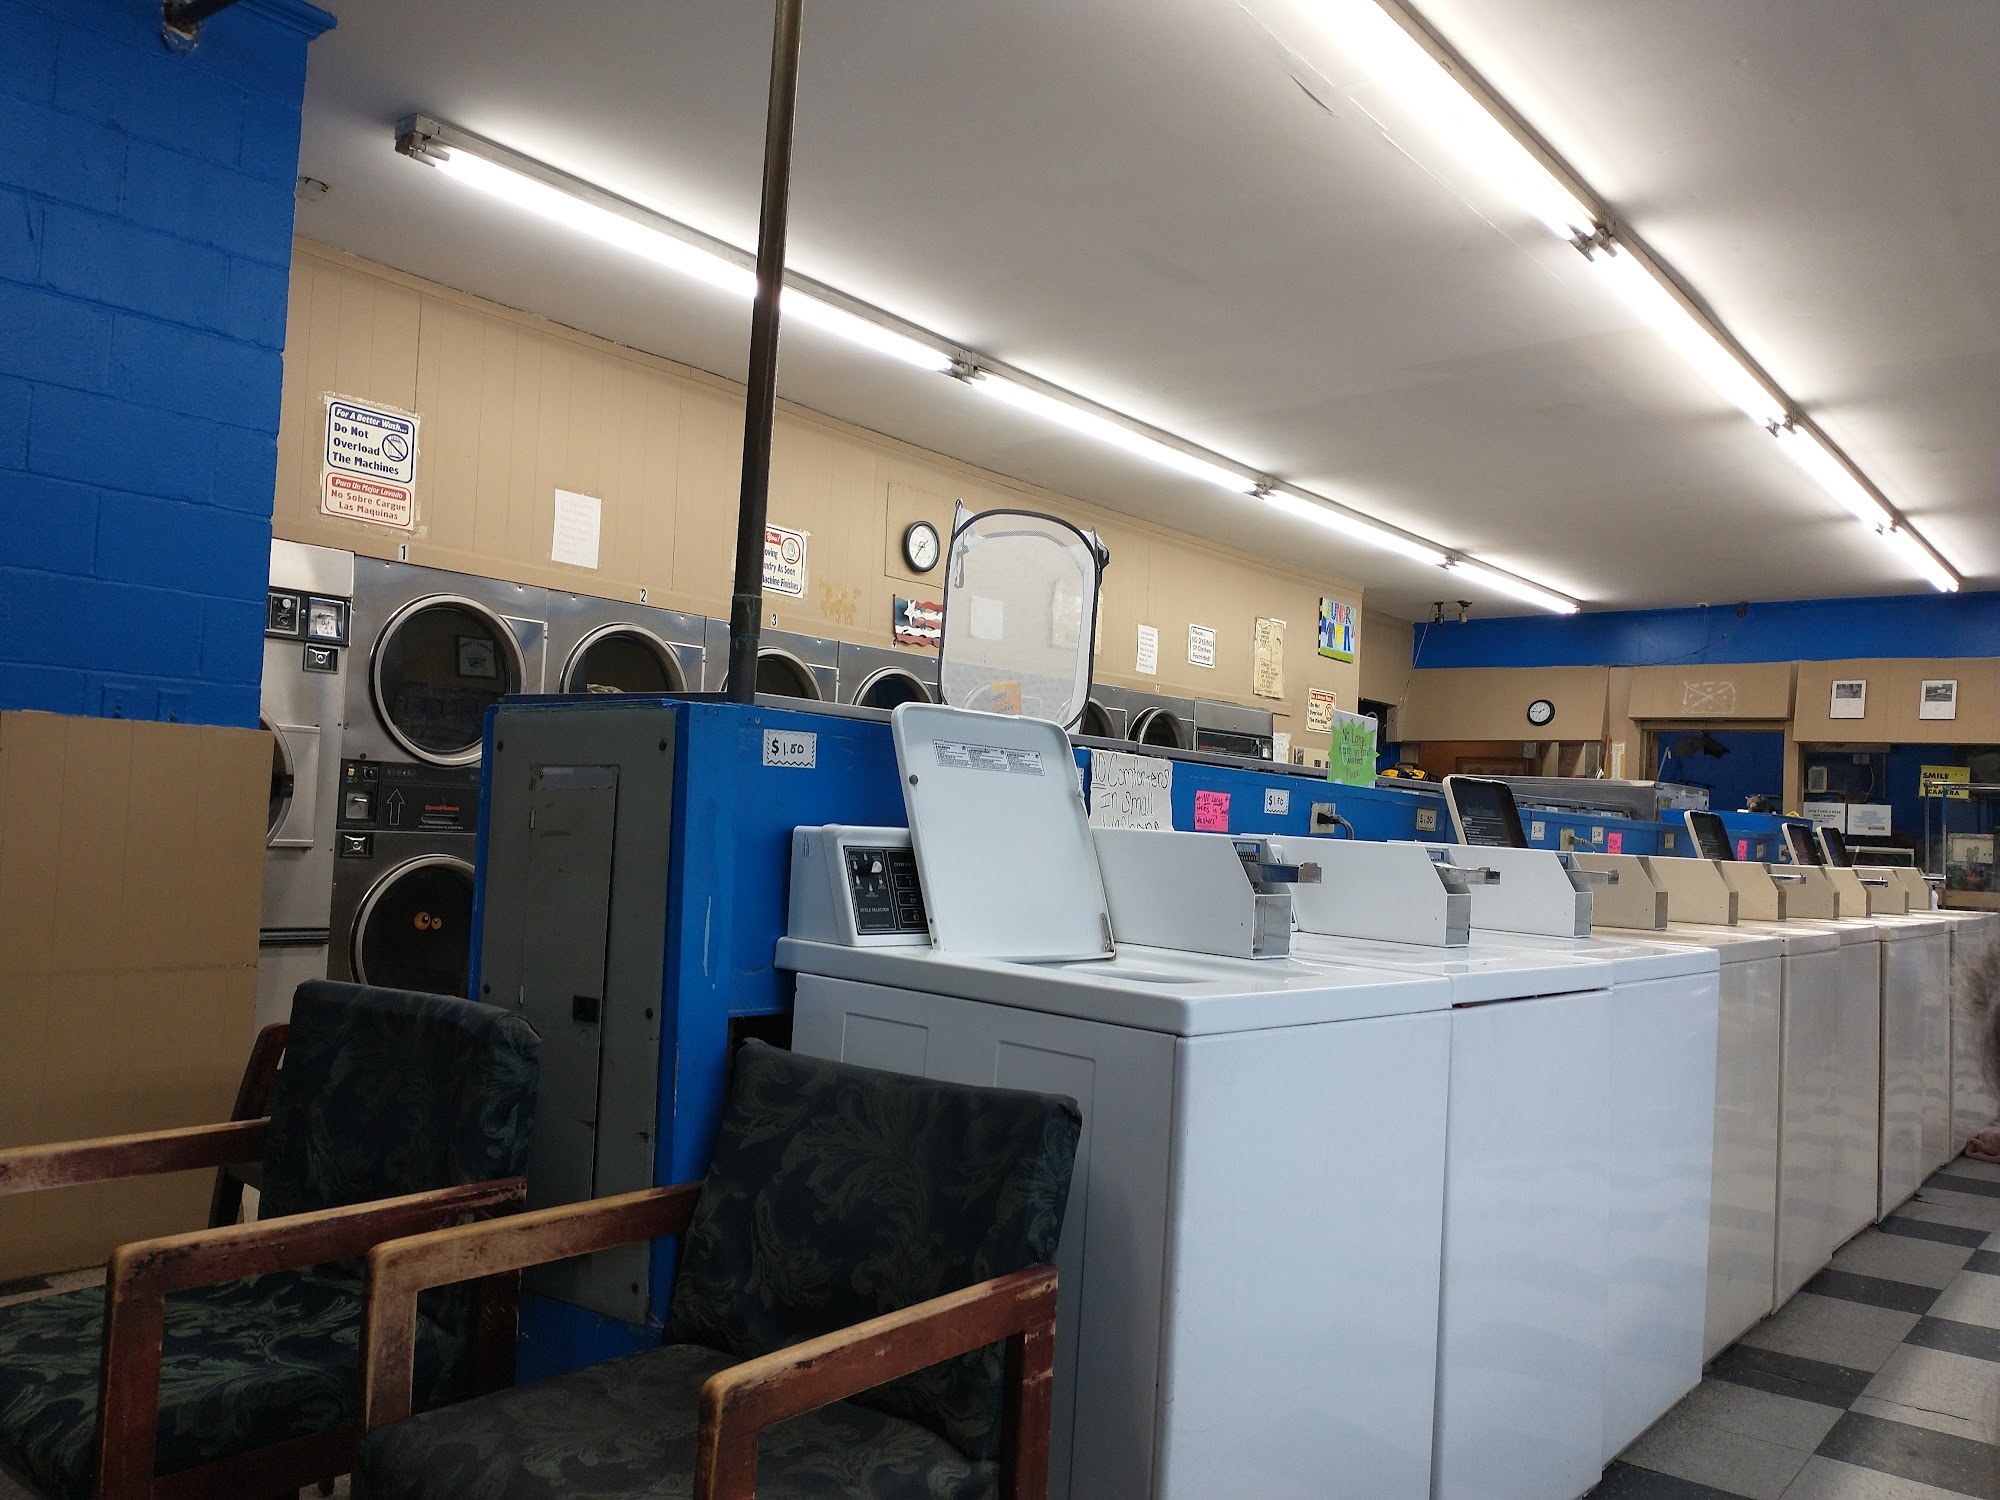 Econ-O-Wash Laundromat